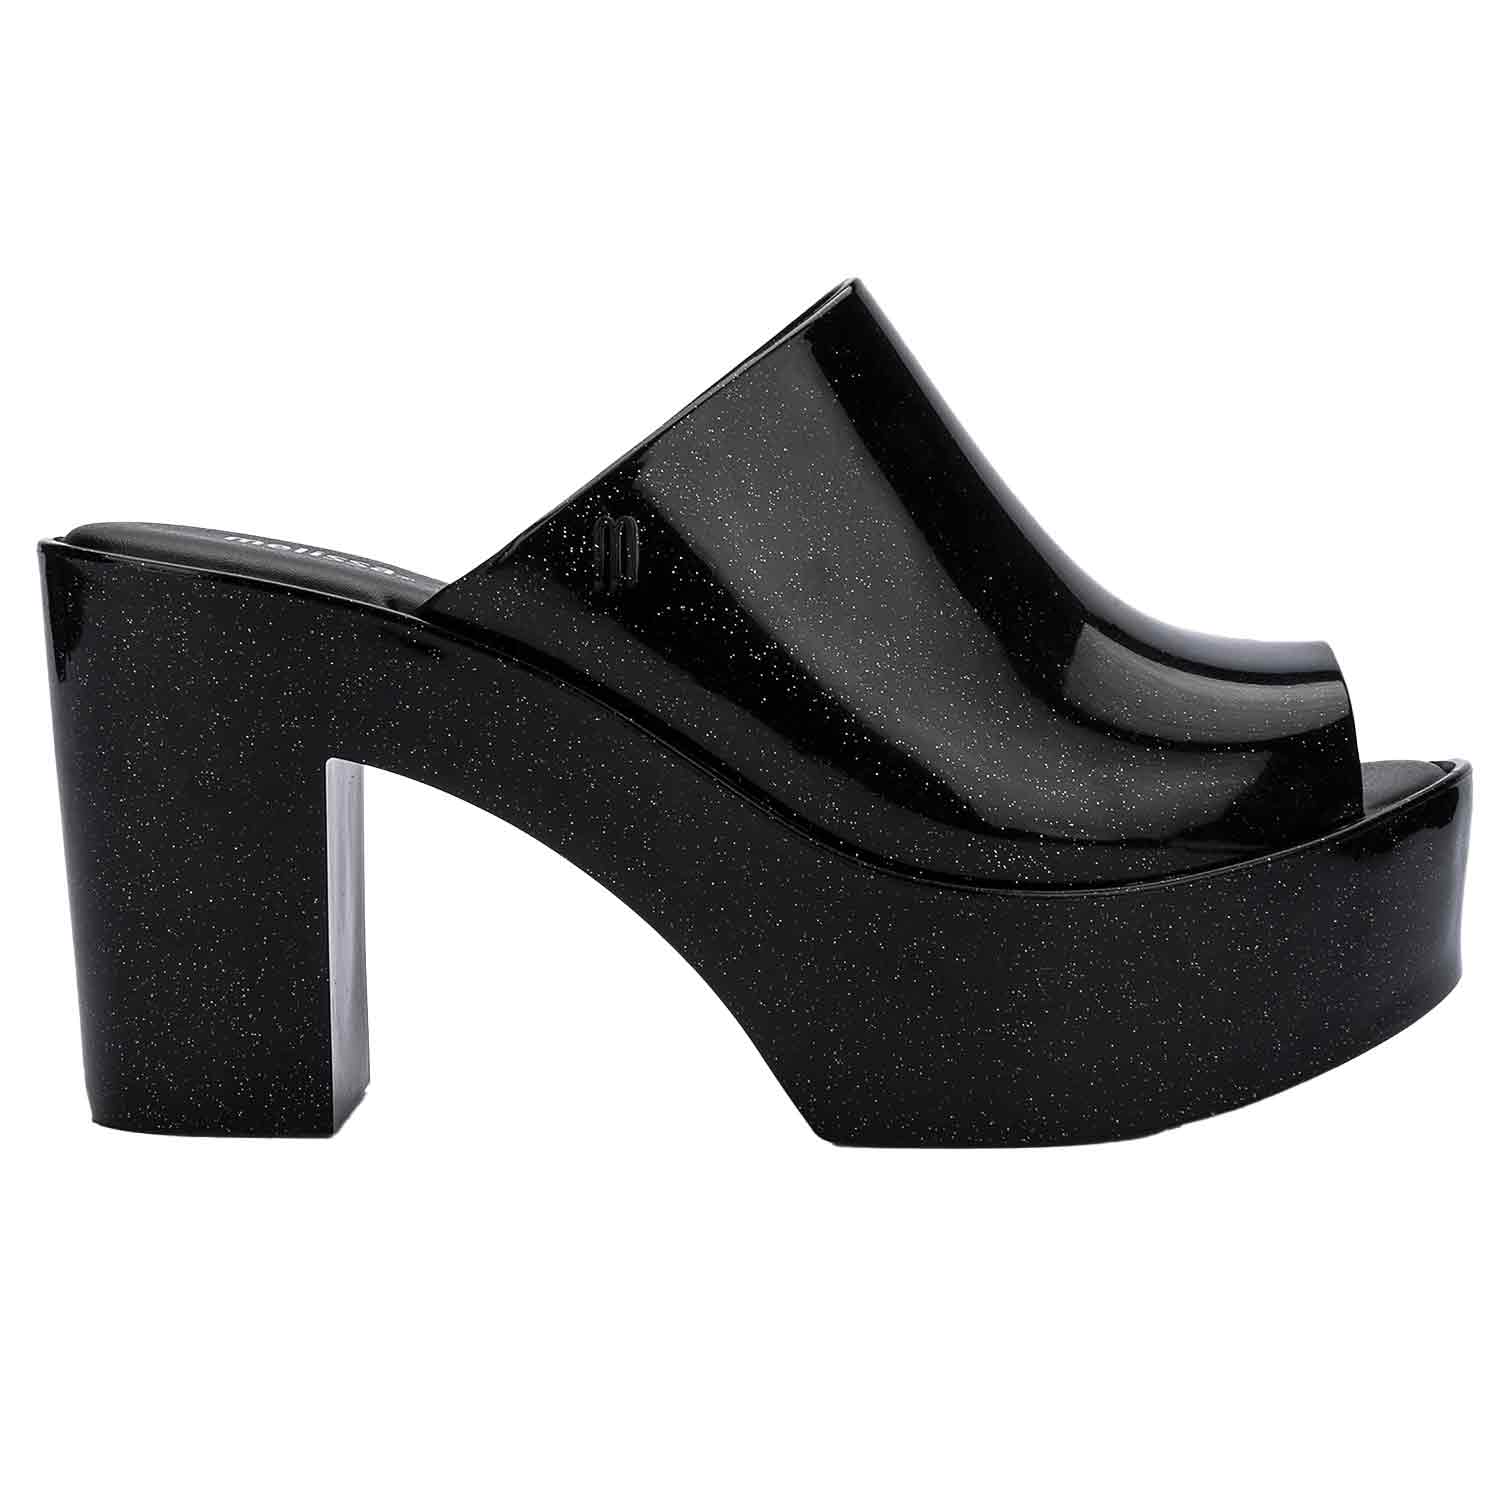 Melissa Women's Mule Style Sandal - Glitter Black